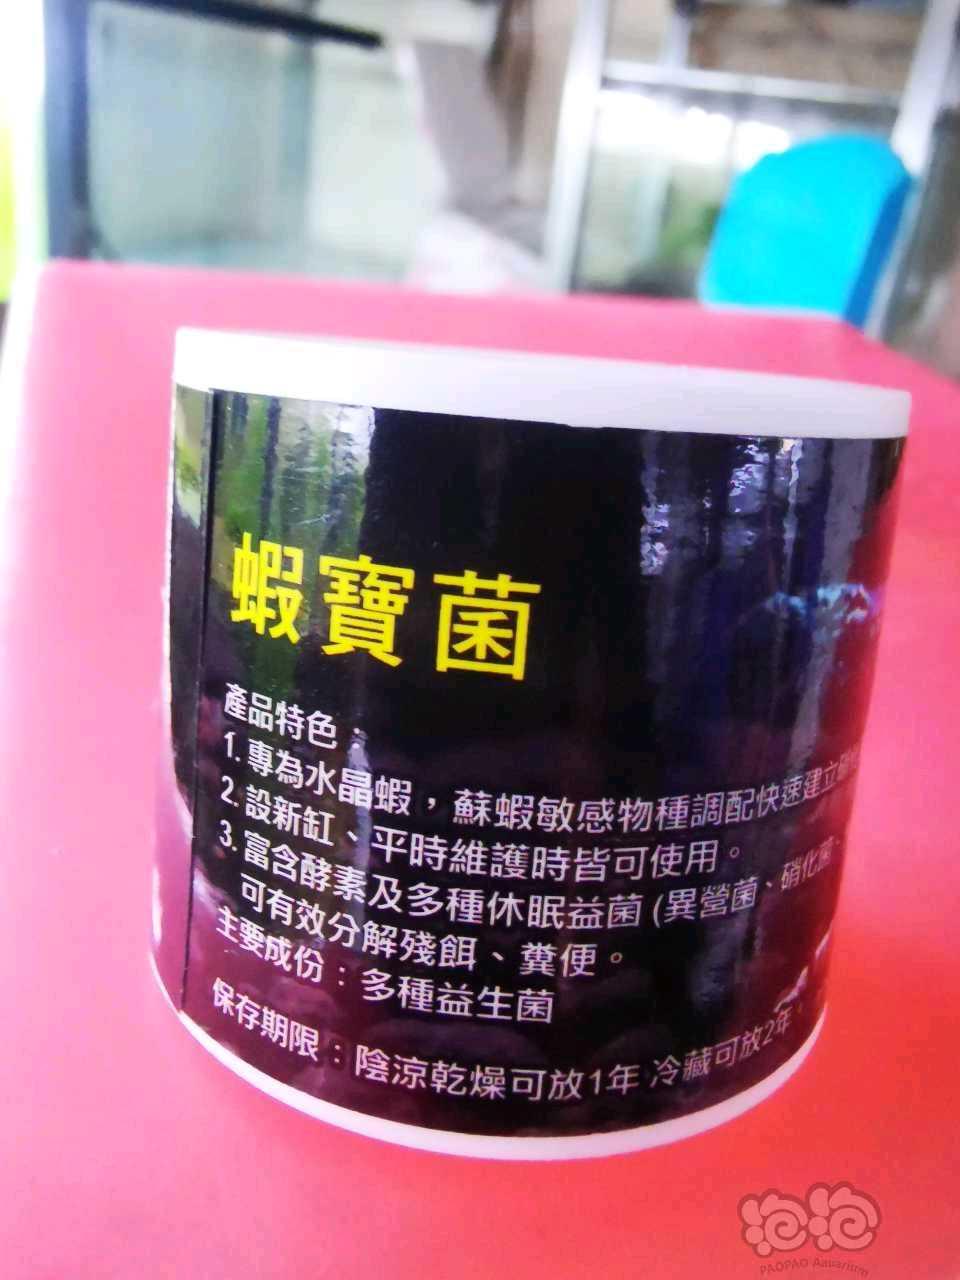 出水晶虾专业产品台湾森林叔叔虾五宝-图1